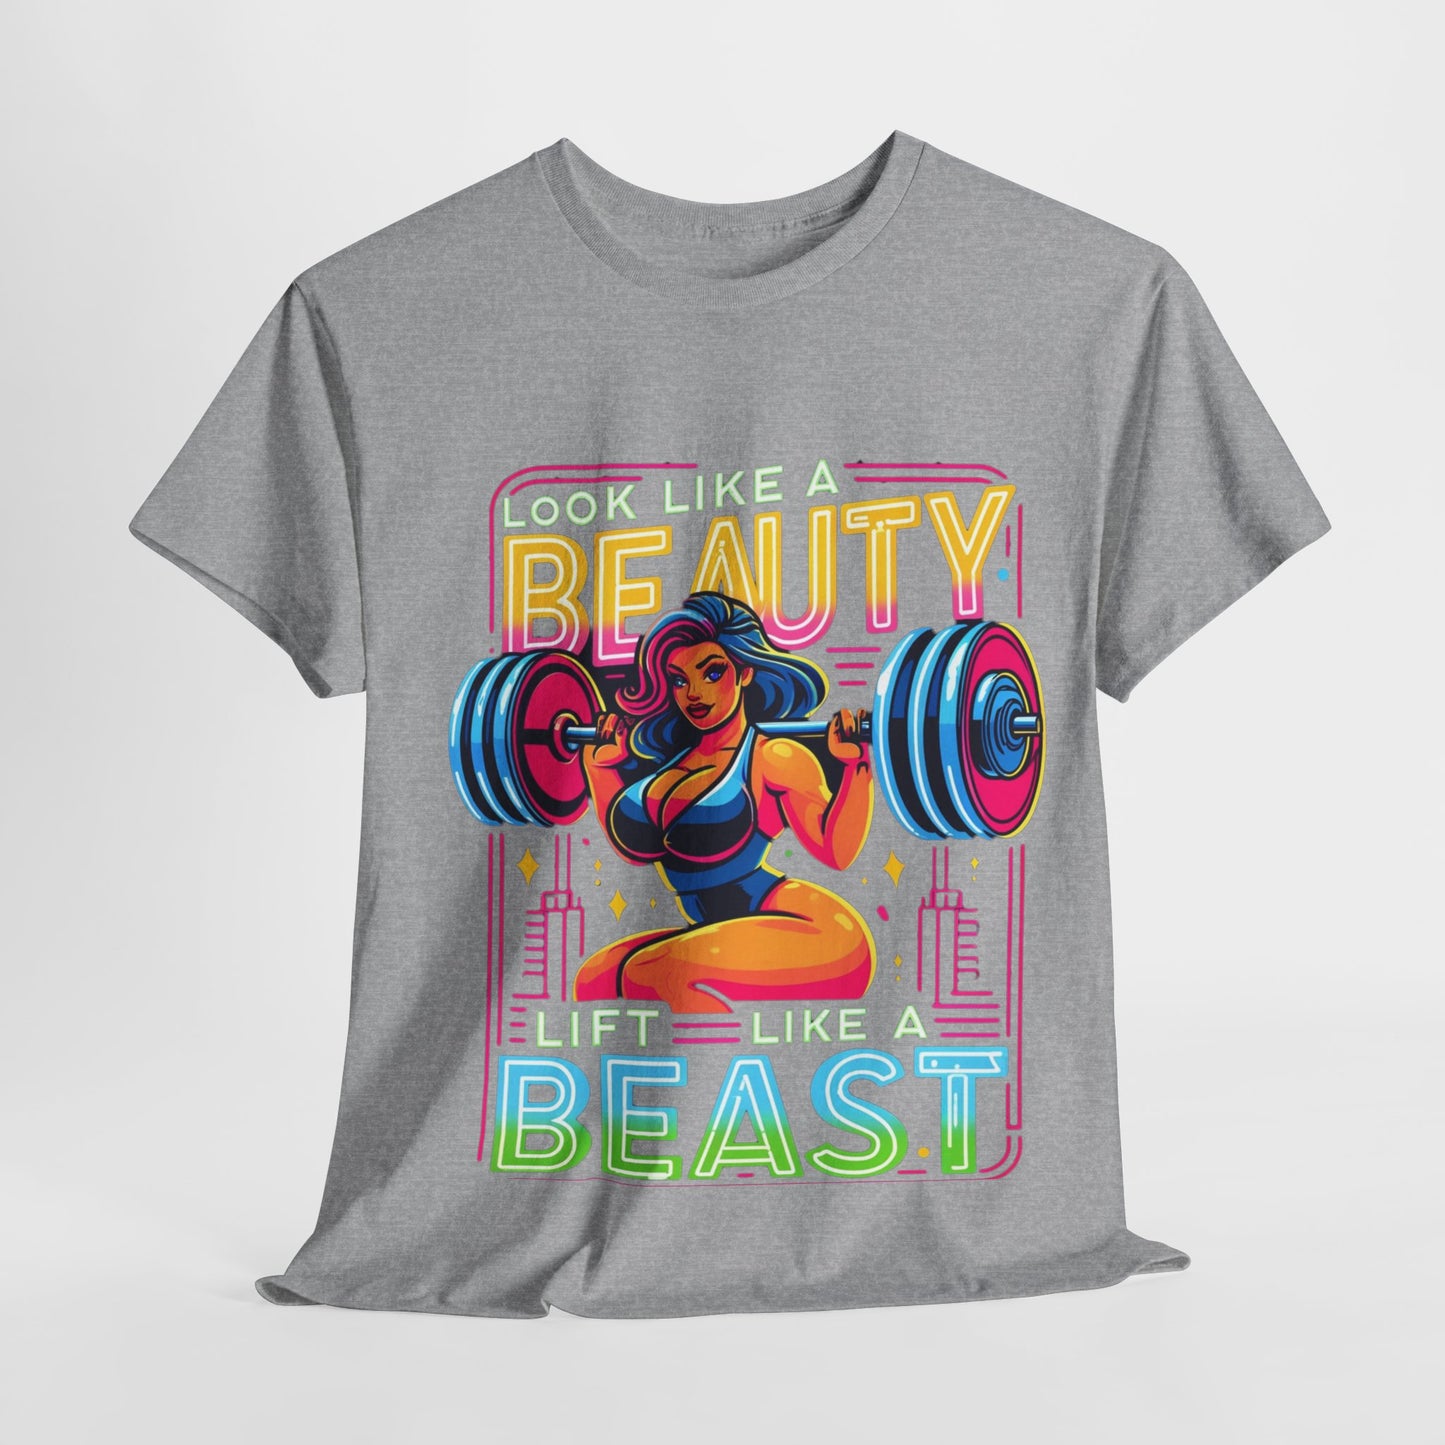 Y.M.L.Y. "Look Like a Beauty, Lift Like a Beast" T-Shirts Motivational T-Shirts Gym Workout T-Shirts